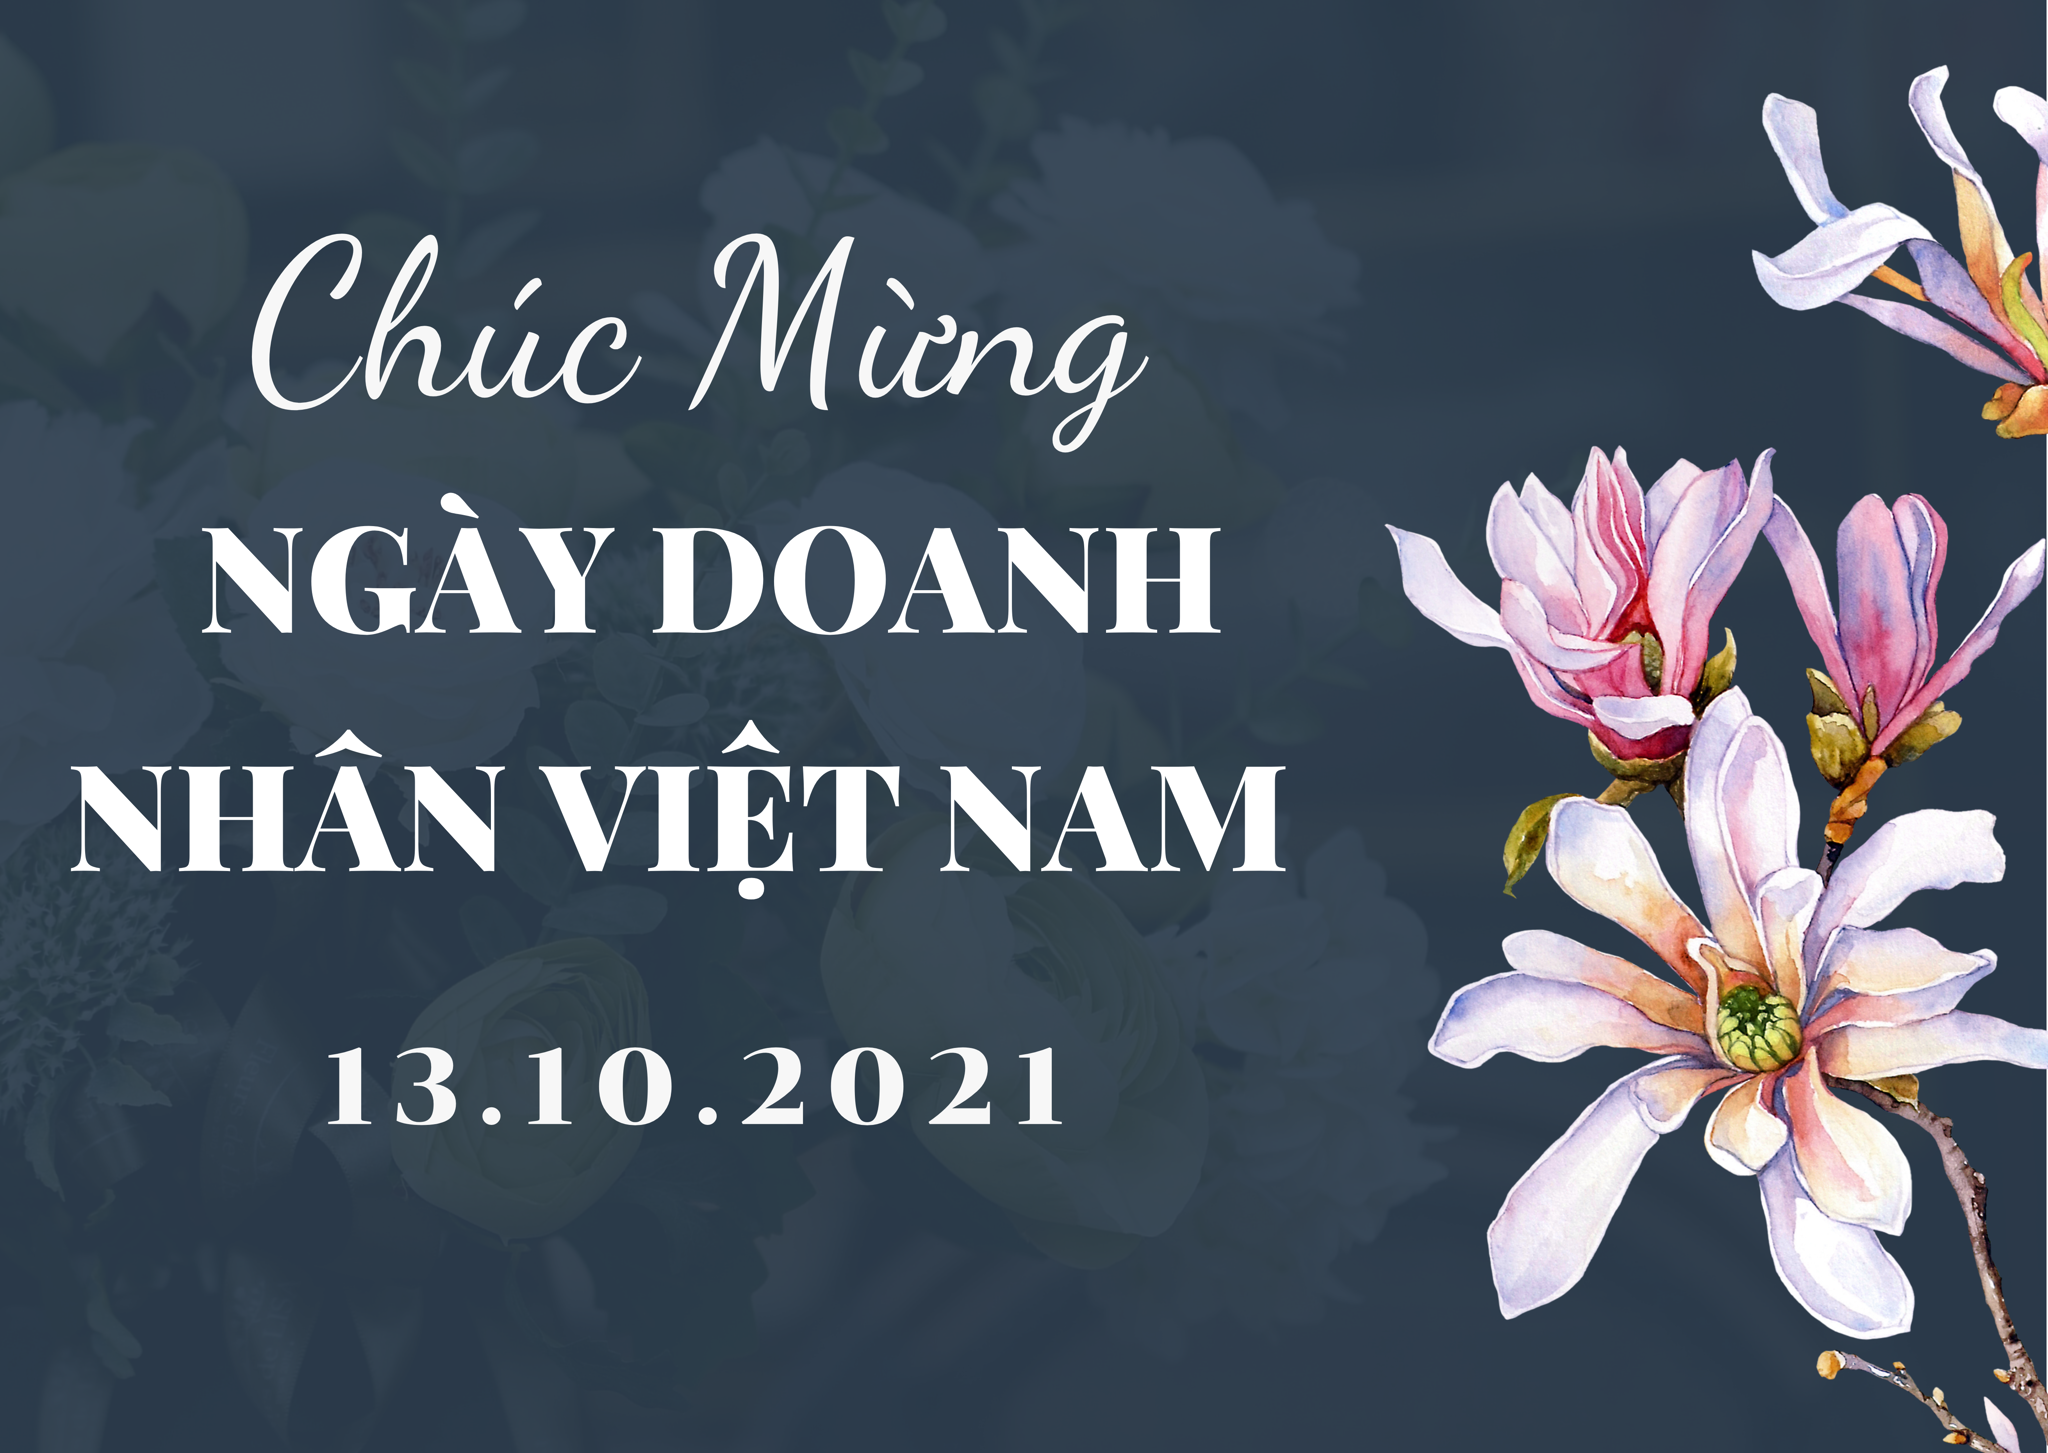 Niềm tự hào của người Việt không chỉ nằm ở những thành tựu trong lĩnh vực thể thao hay văn hóa, mà còn ở sự đóng góp của những doanh nhân tài ba. Hôm nay, vào ngày Doanh nhân Việt Nam, hãy cùng nhau chúc mừng và tôn vinh những hình mẫu doanh nhân xuất sắc của đất nước. Và hãy để những tấm thiệp chúc mừng truyền đi thông điệp tâm huyết và sự thấu hiểu đến những người mà bạn yêu mến.